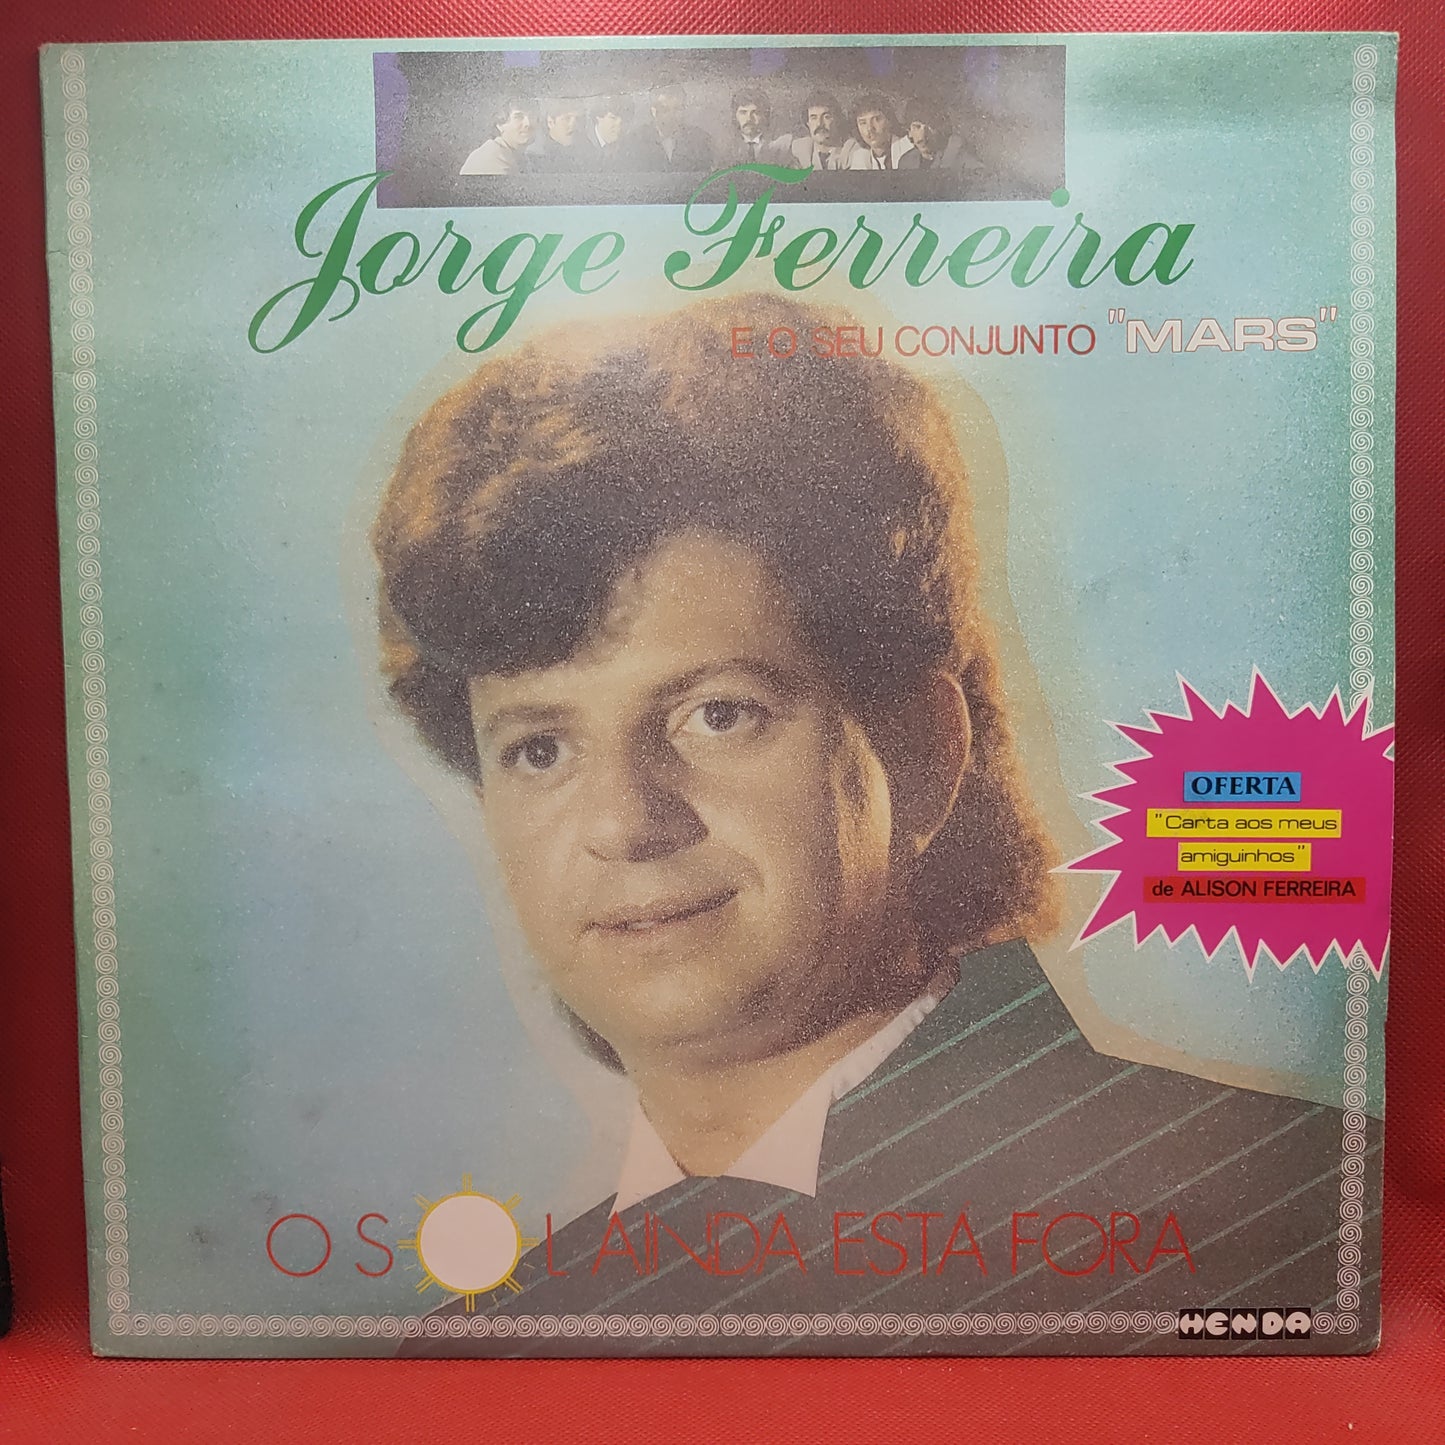 Jorge Ferreira ‎– O Sol Ainda Está Fora